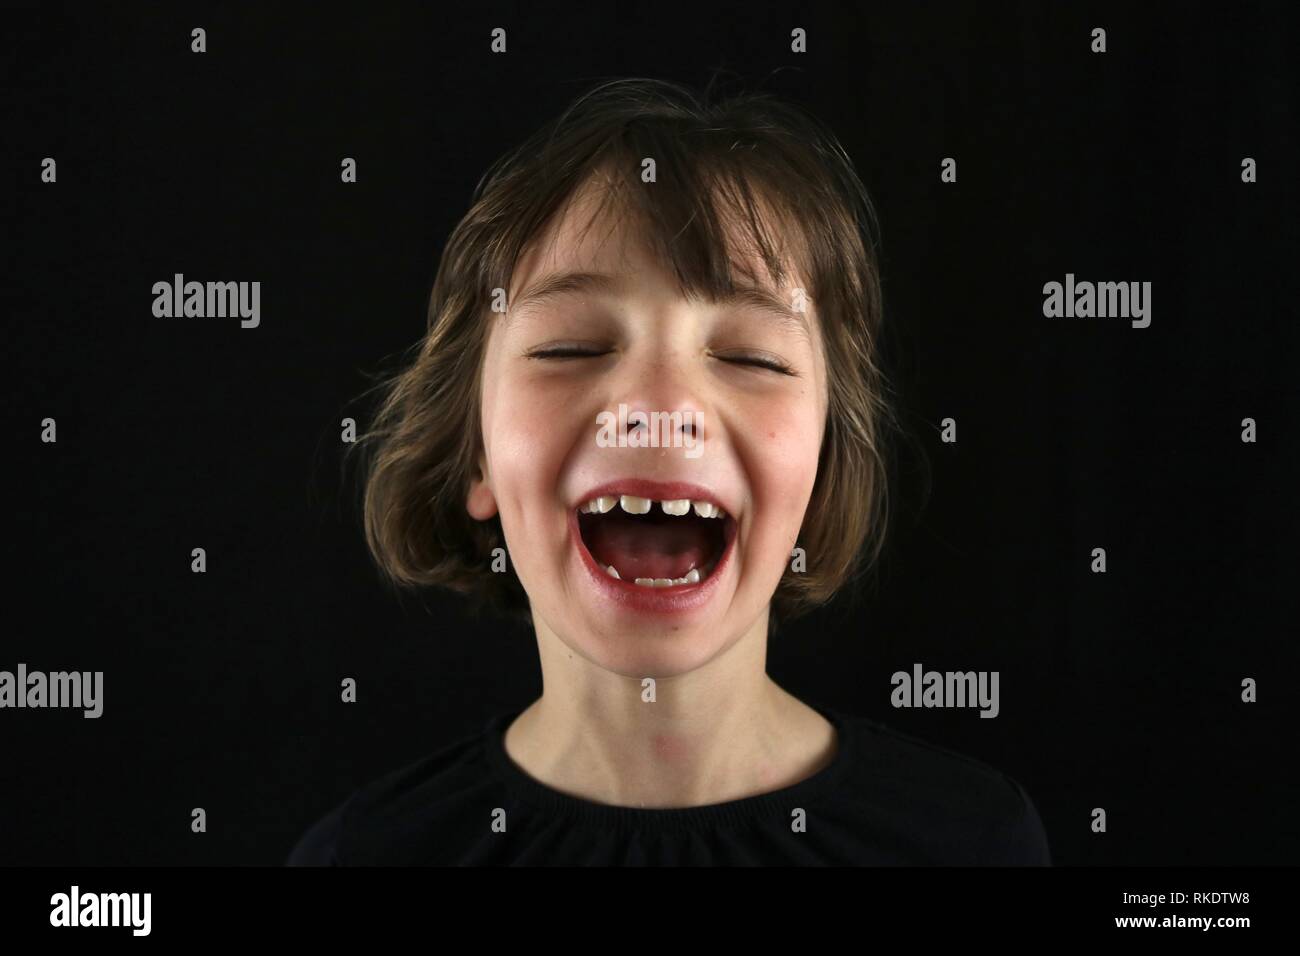 Porträt eines jungen Mädchens laut lachend mit Grübchen und ihre Augen vor einem schwarzen Hintergrund geschlossen Stockfoto